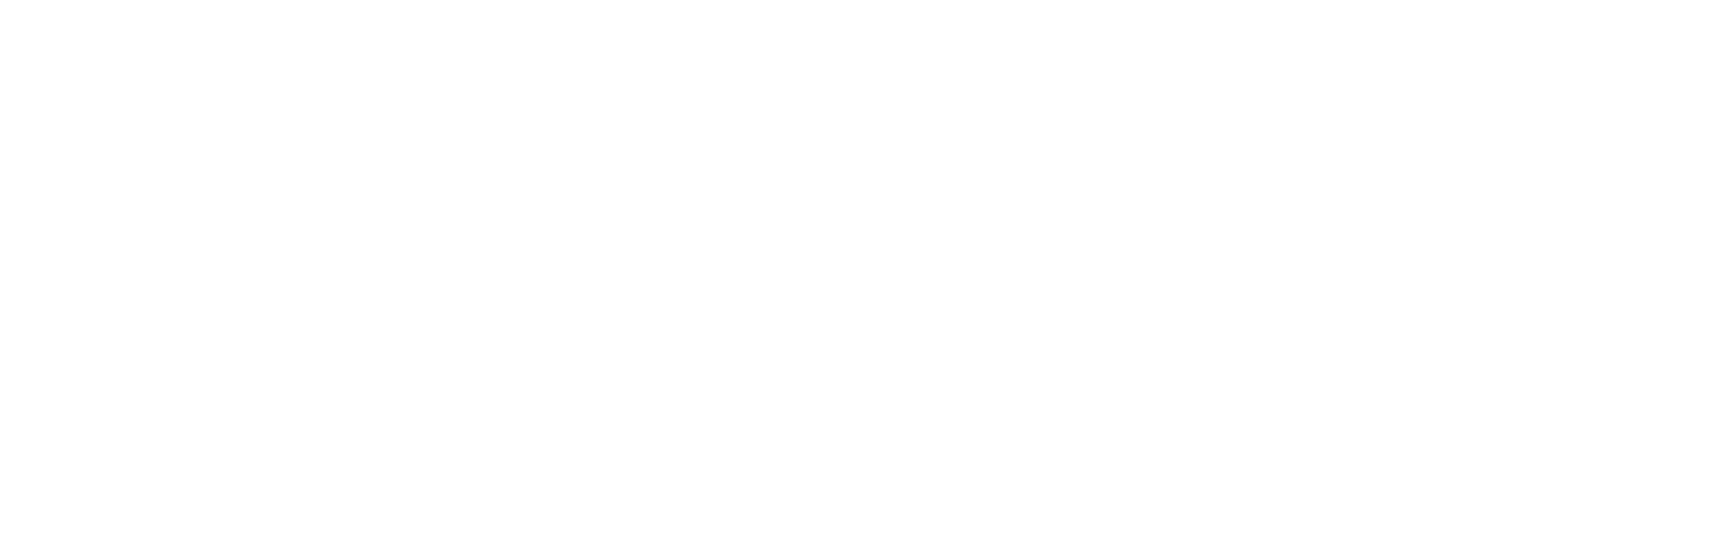 Chun Wang